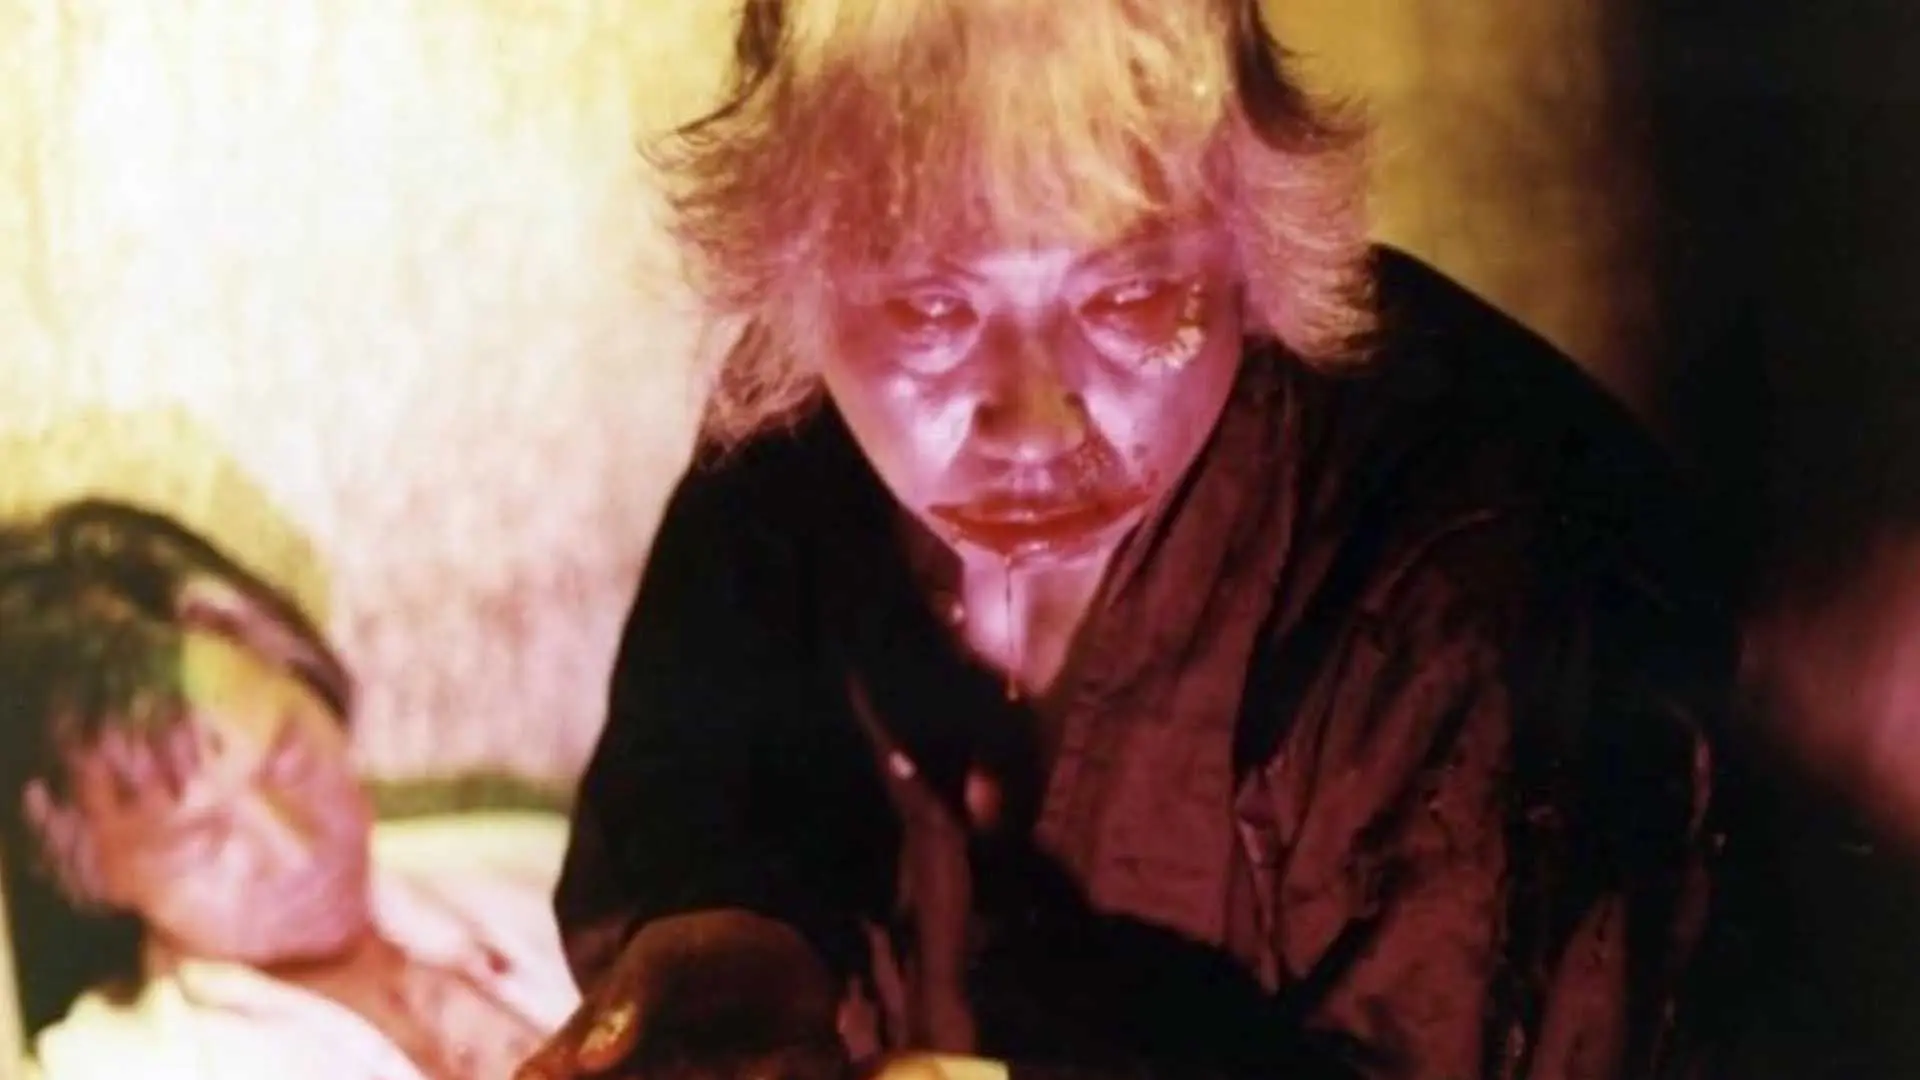 زامبی با صورتی خونین در فیلم A Monstrous Corpse